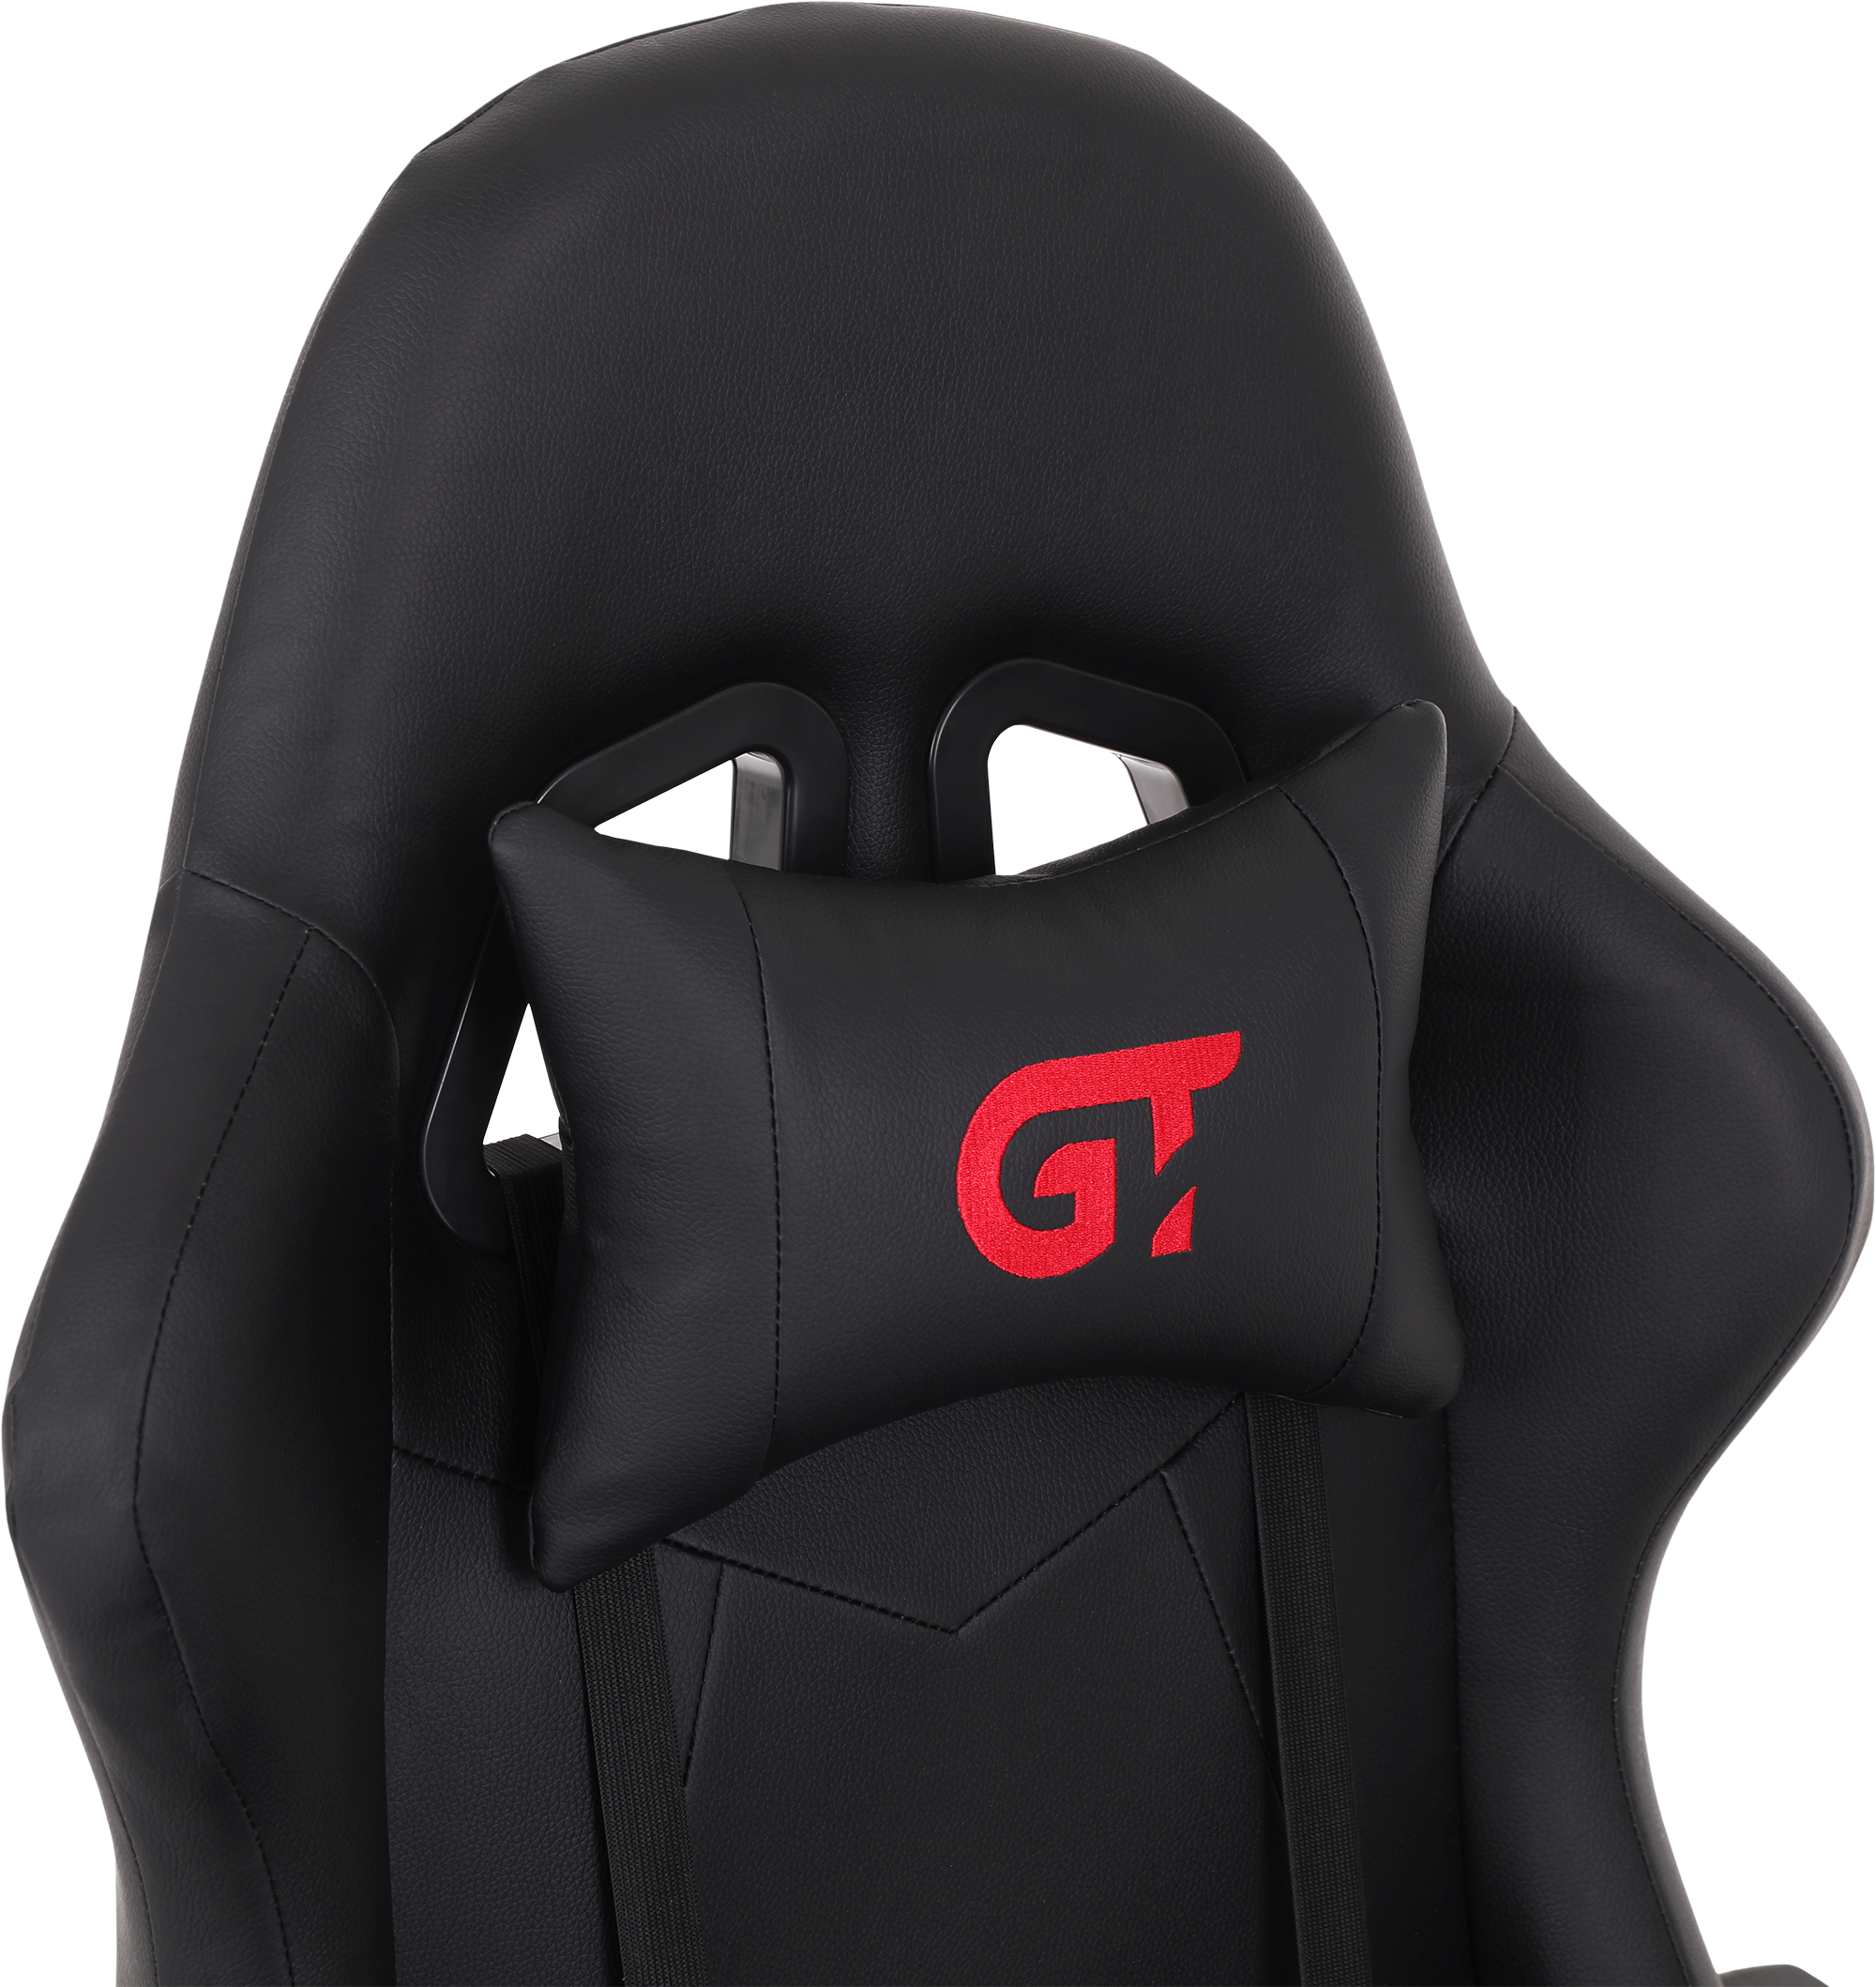 Геймерское кресло GT Racer черное (X-2323 Black) - фото 7